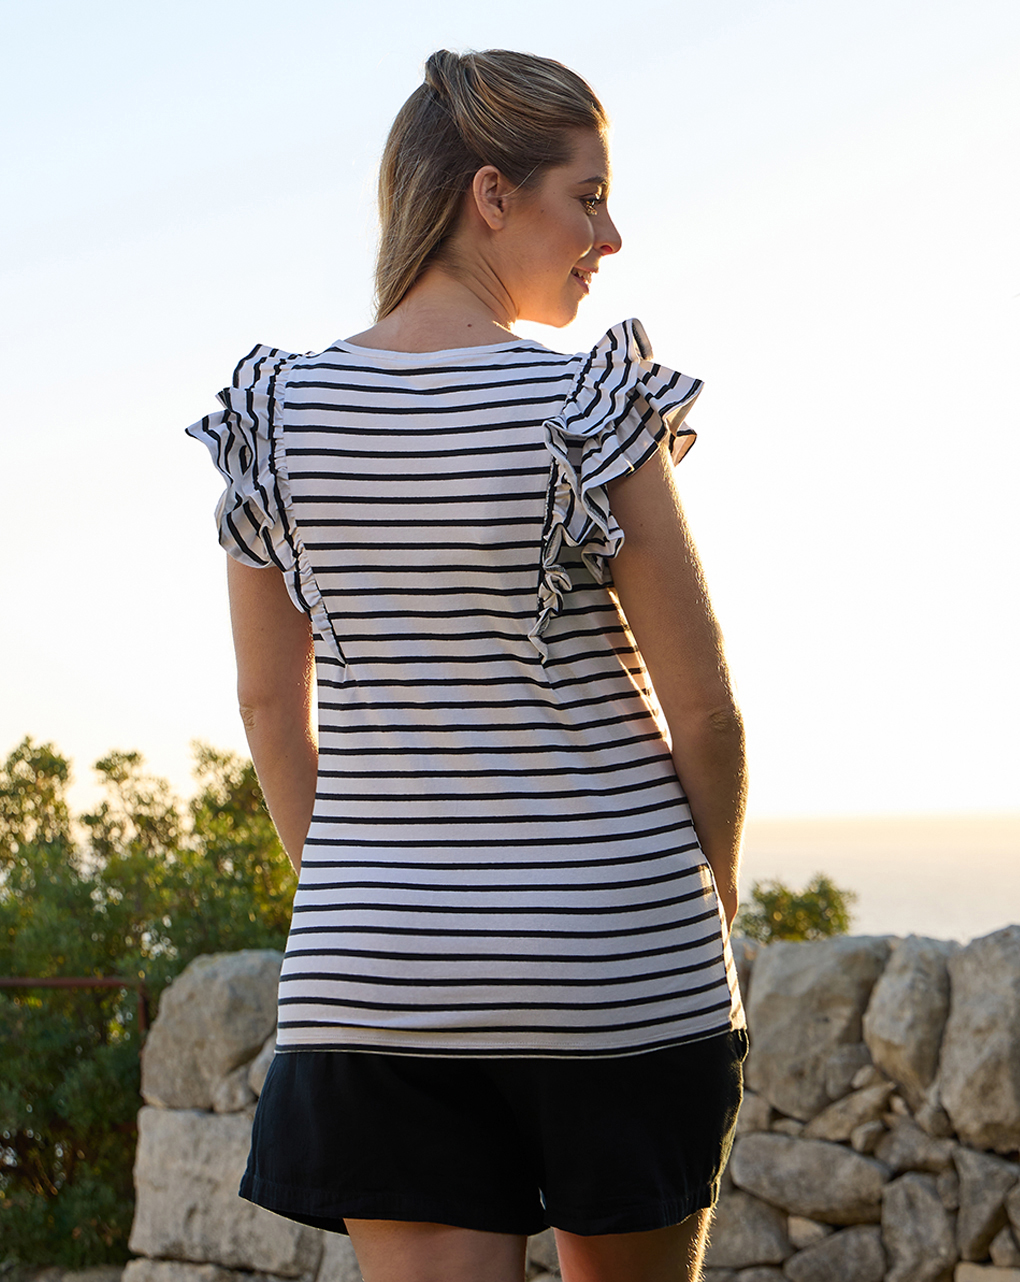 γυναικείο t-shirt εγκυμοσύνης/θηλασμού ριγέ λευκό/μαύρο με βολάν - Prénatal